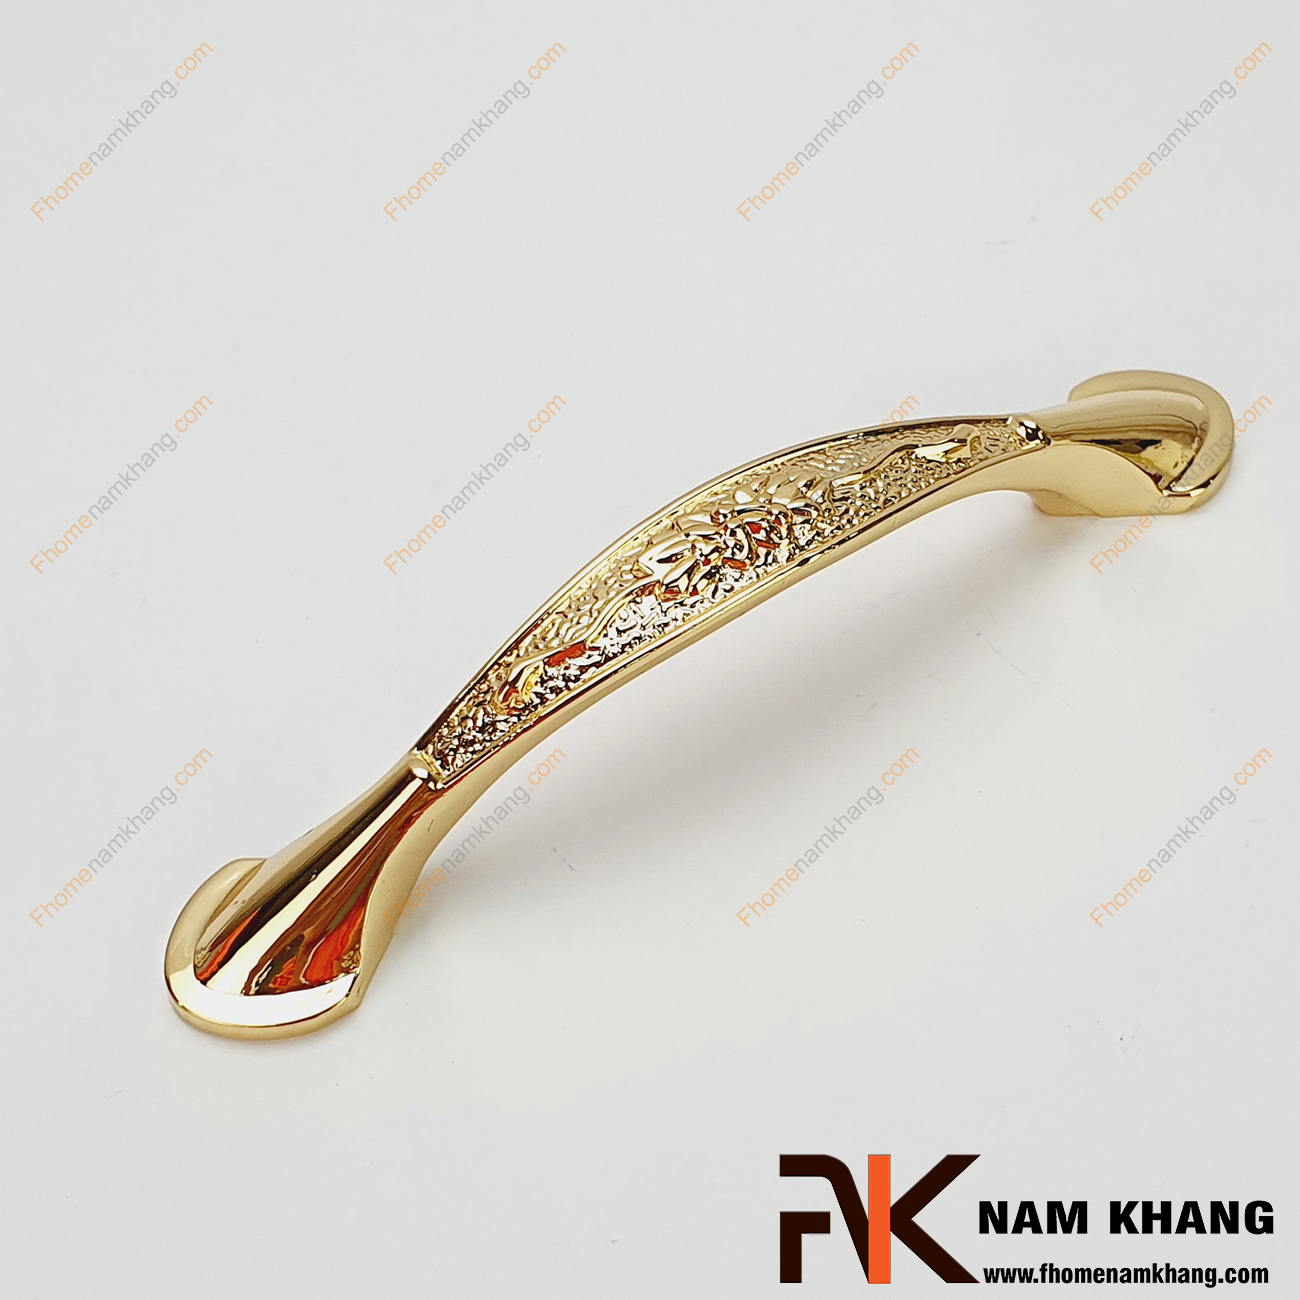 Tay nắm tủ đồng vàng NK037-96DV có thiết kế thon gọn, phong cách rất mới lạ với họa tiết lá đối xứng trên toàn bộ phần thân tay nắm. 